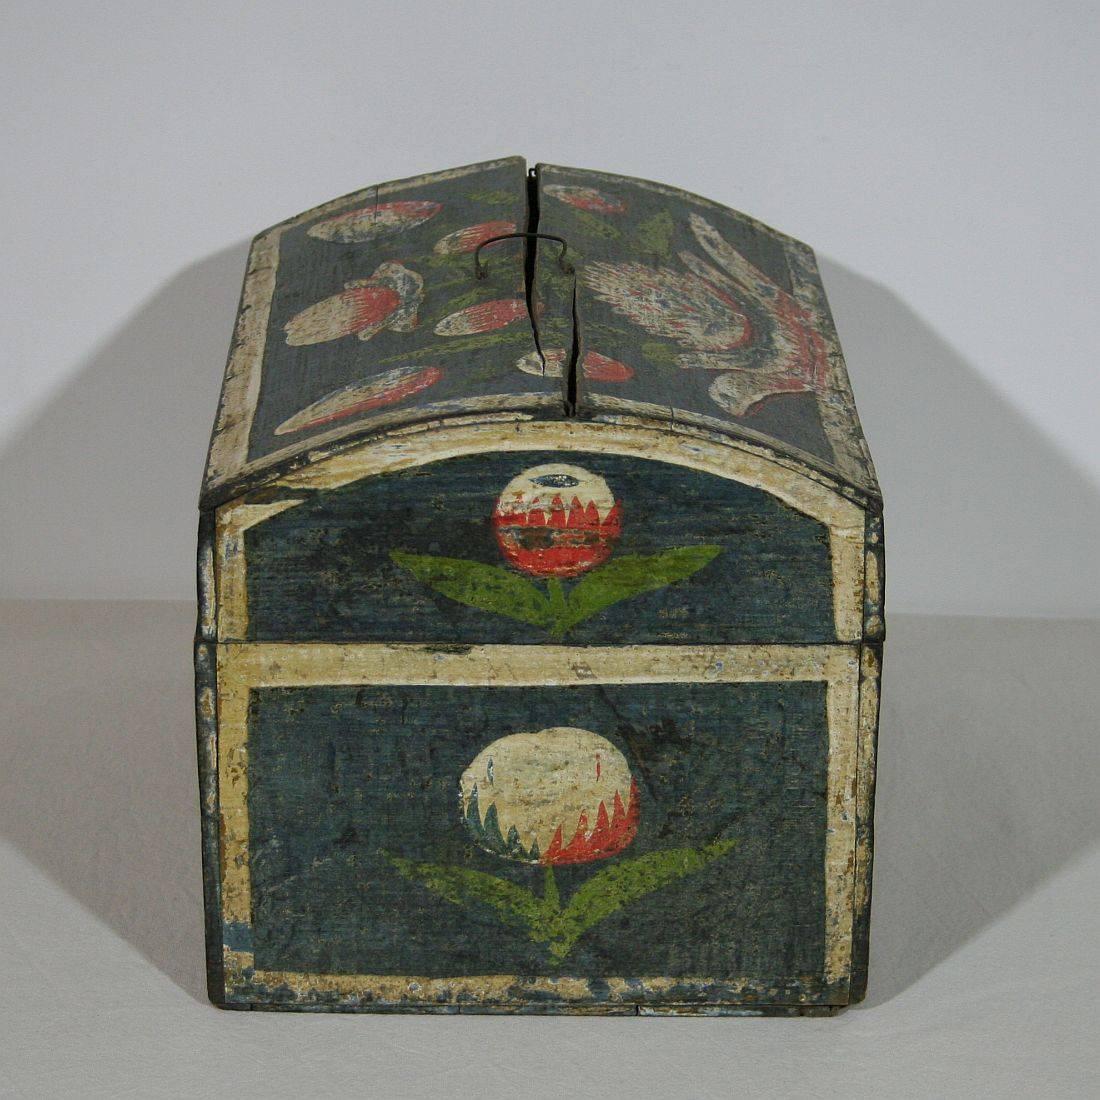 Wood 18th Century French Folk Art Weddingbox from Normandy